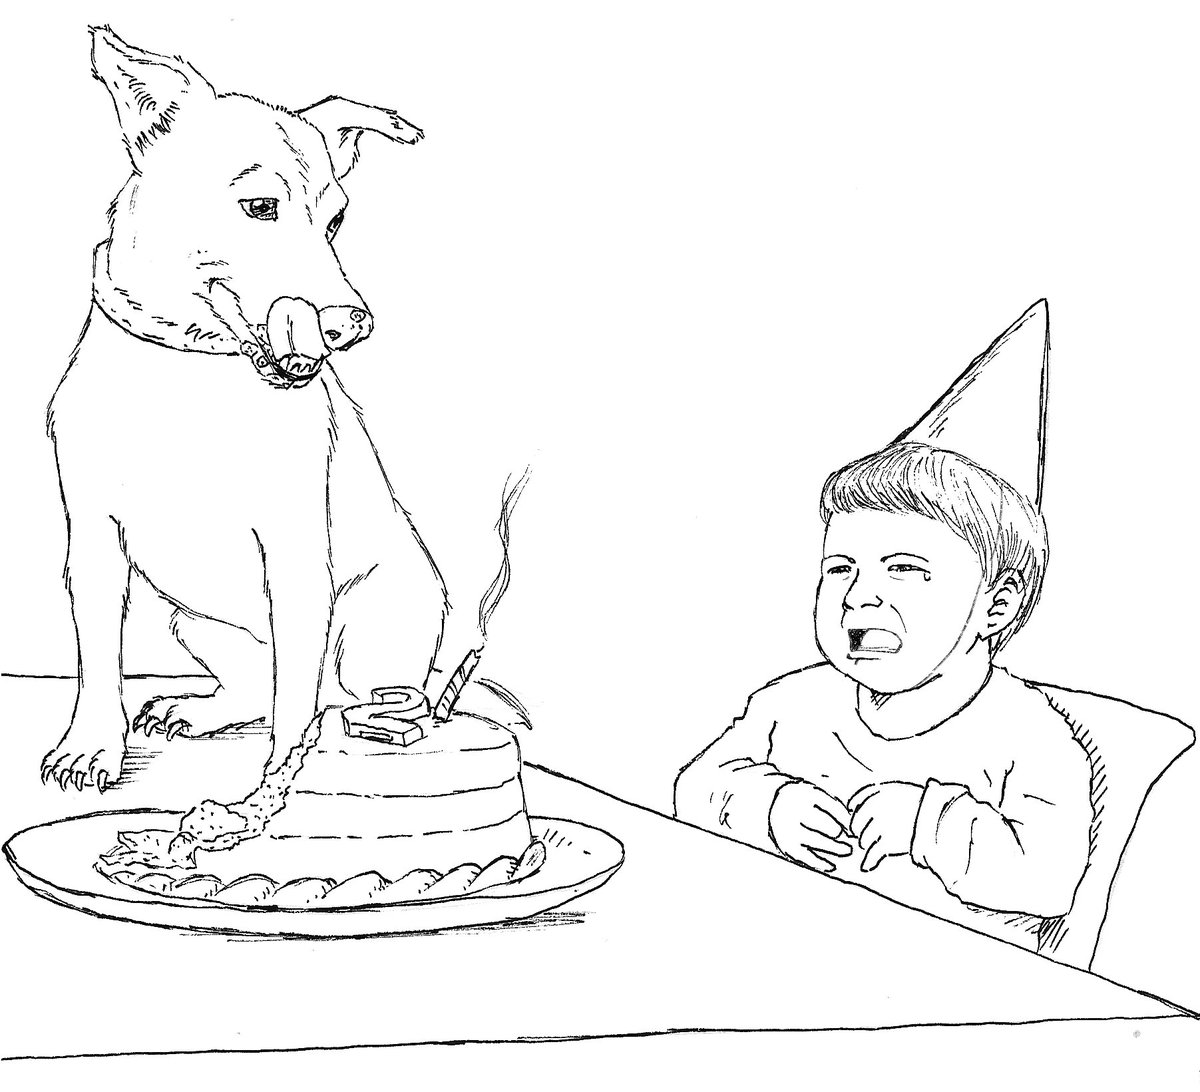 Inktober Day 21: Bad Dog.
Happy birthday and thanks for the cake, kid. 
#inktober2022 #Inktober #Inktober2018 #Inktoberday21 #Inktoberbaddog